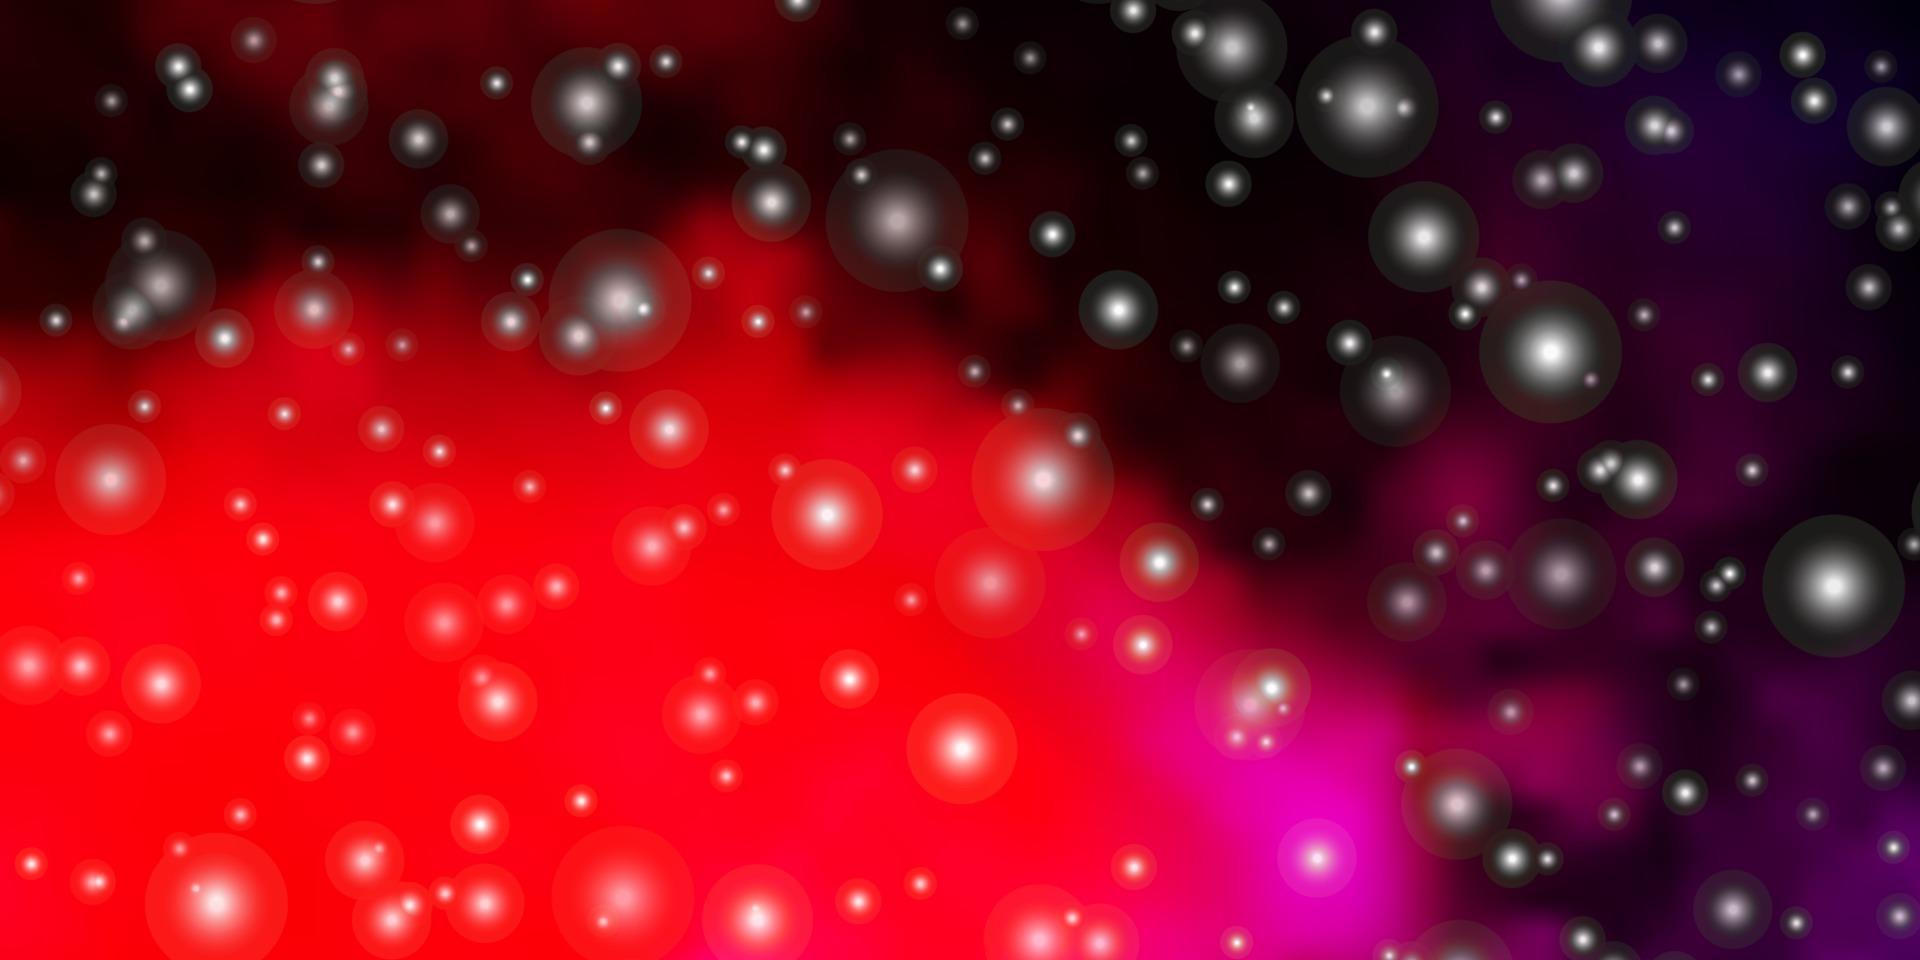 mörkrosa, gul vektorbakgrund med små och stora stjärnor. vektor